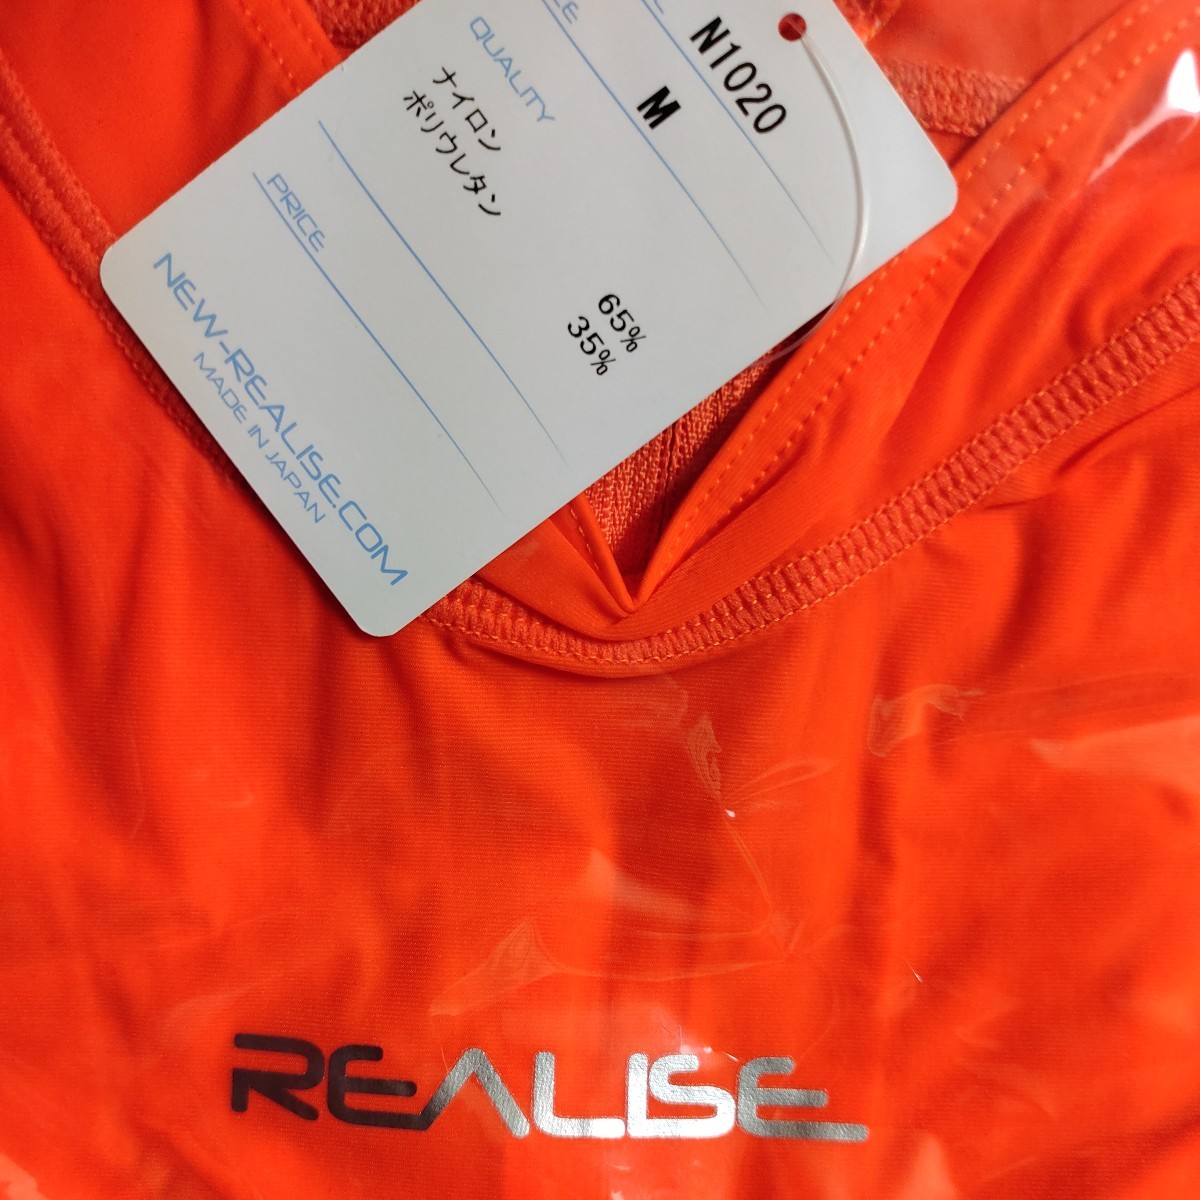  Yahoo auc ограниченная выставка li ARAI zREALISE.. купальный костюм N1020 M размер orange с высоким воротником вода лампочка плавание bikini model костюмированная игра 